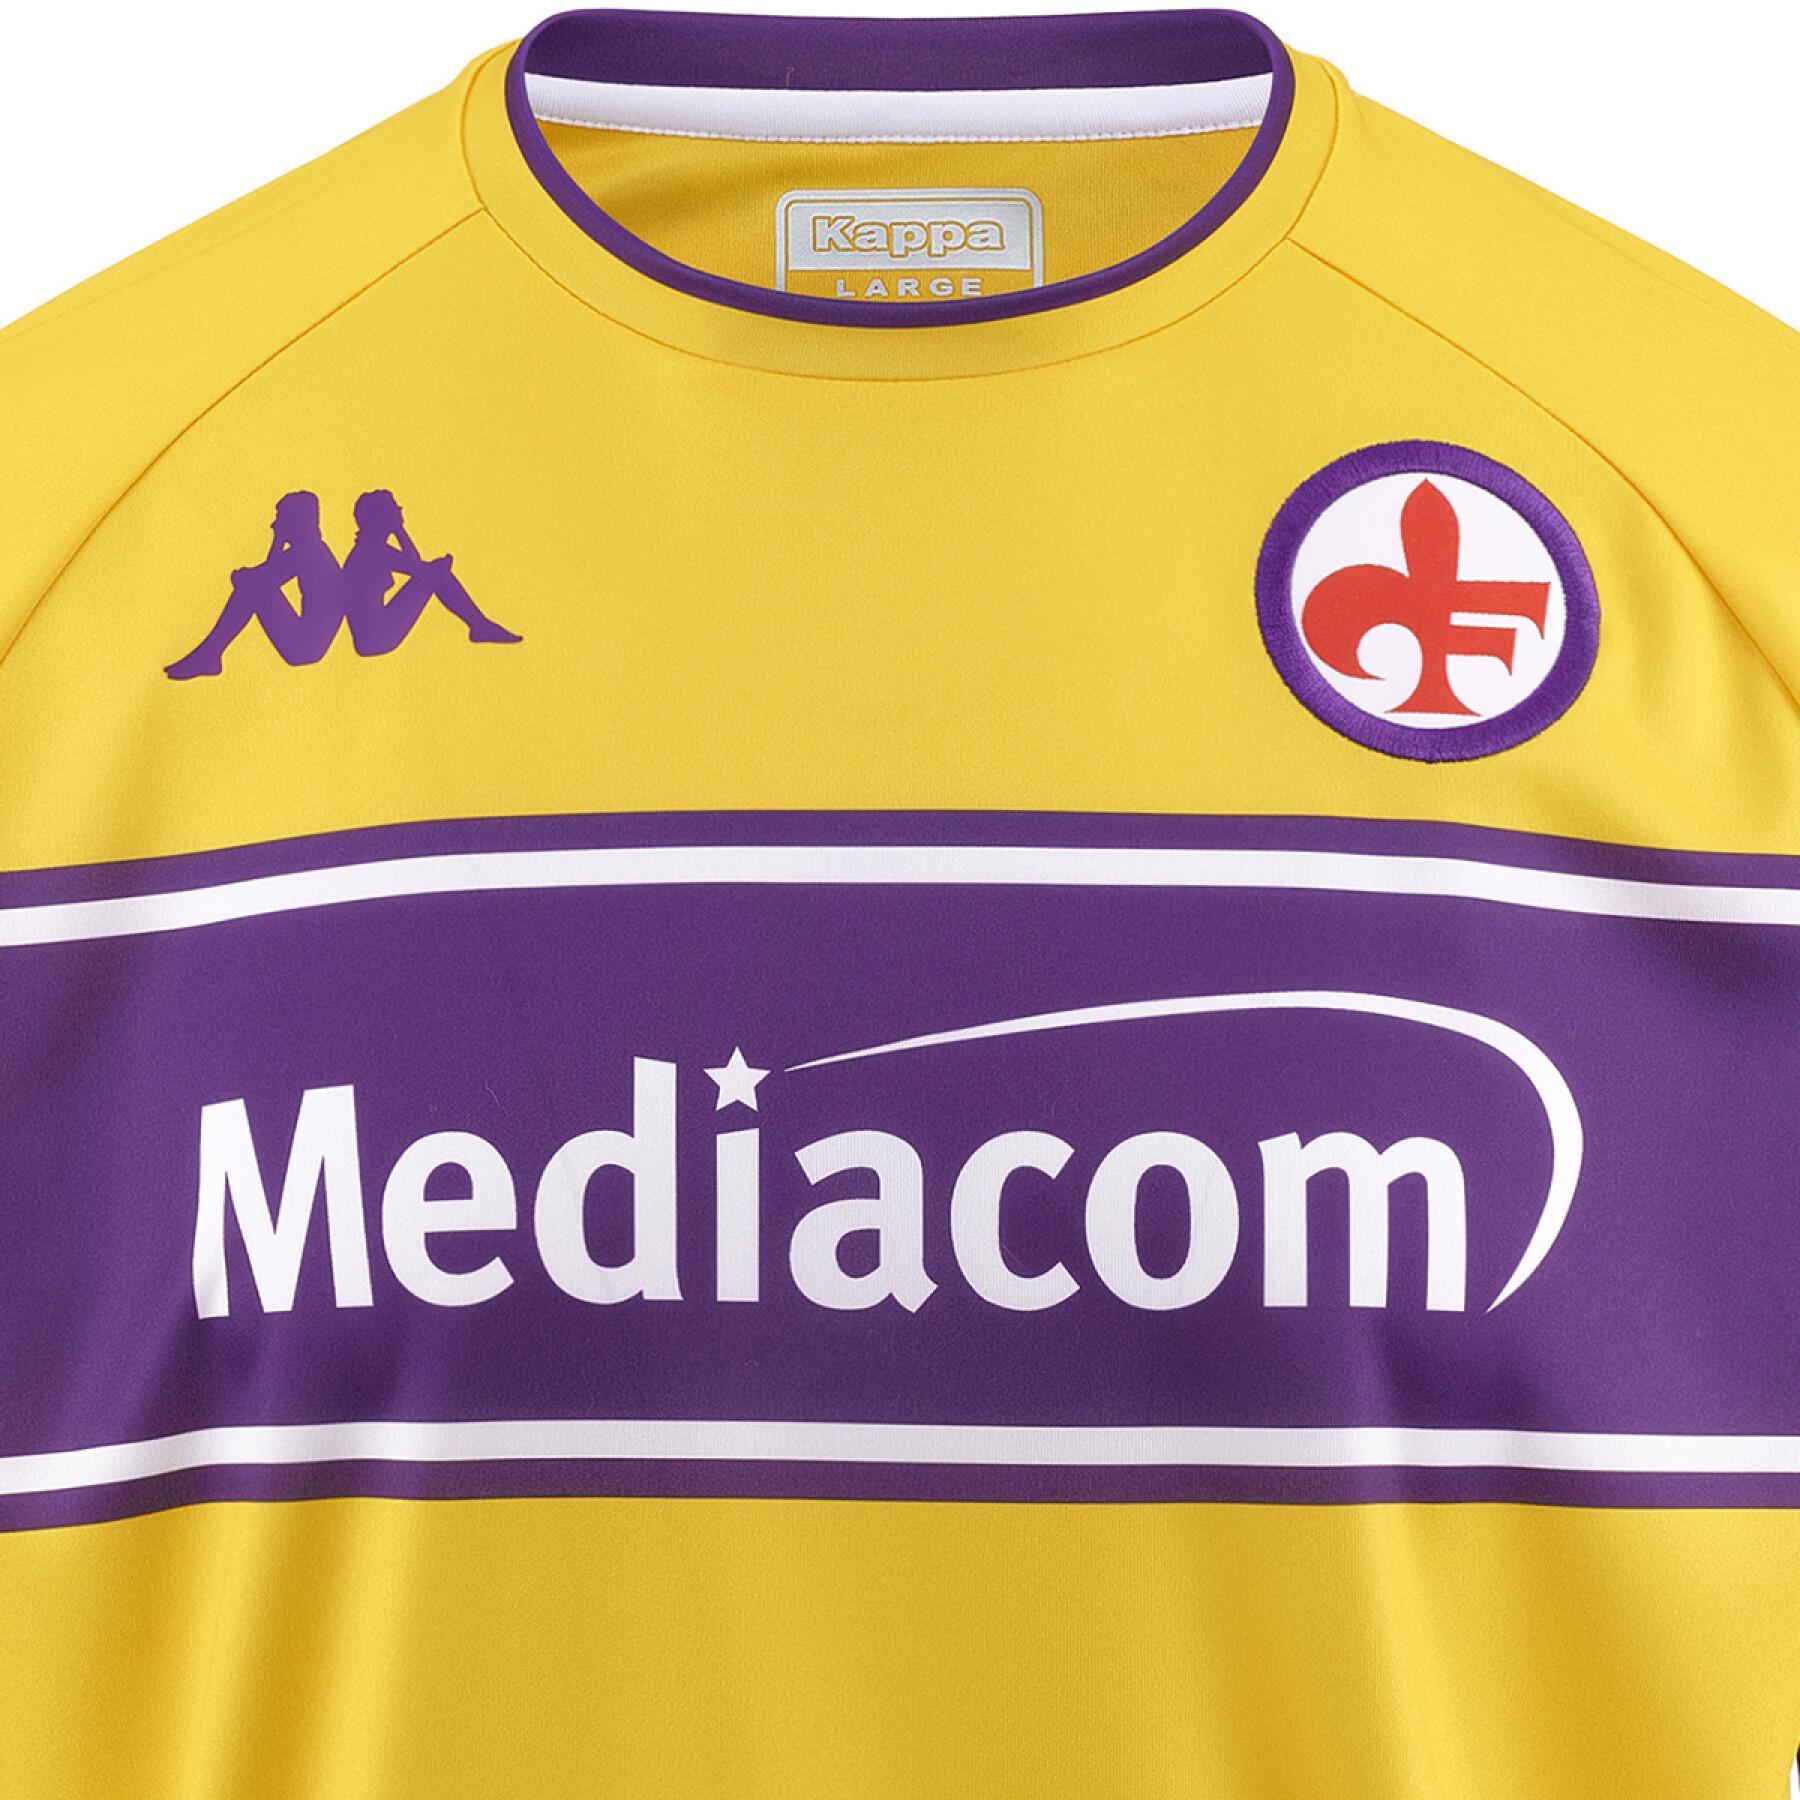 Maillot Third Fiorentina AC 2021/22